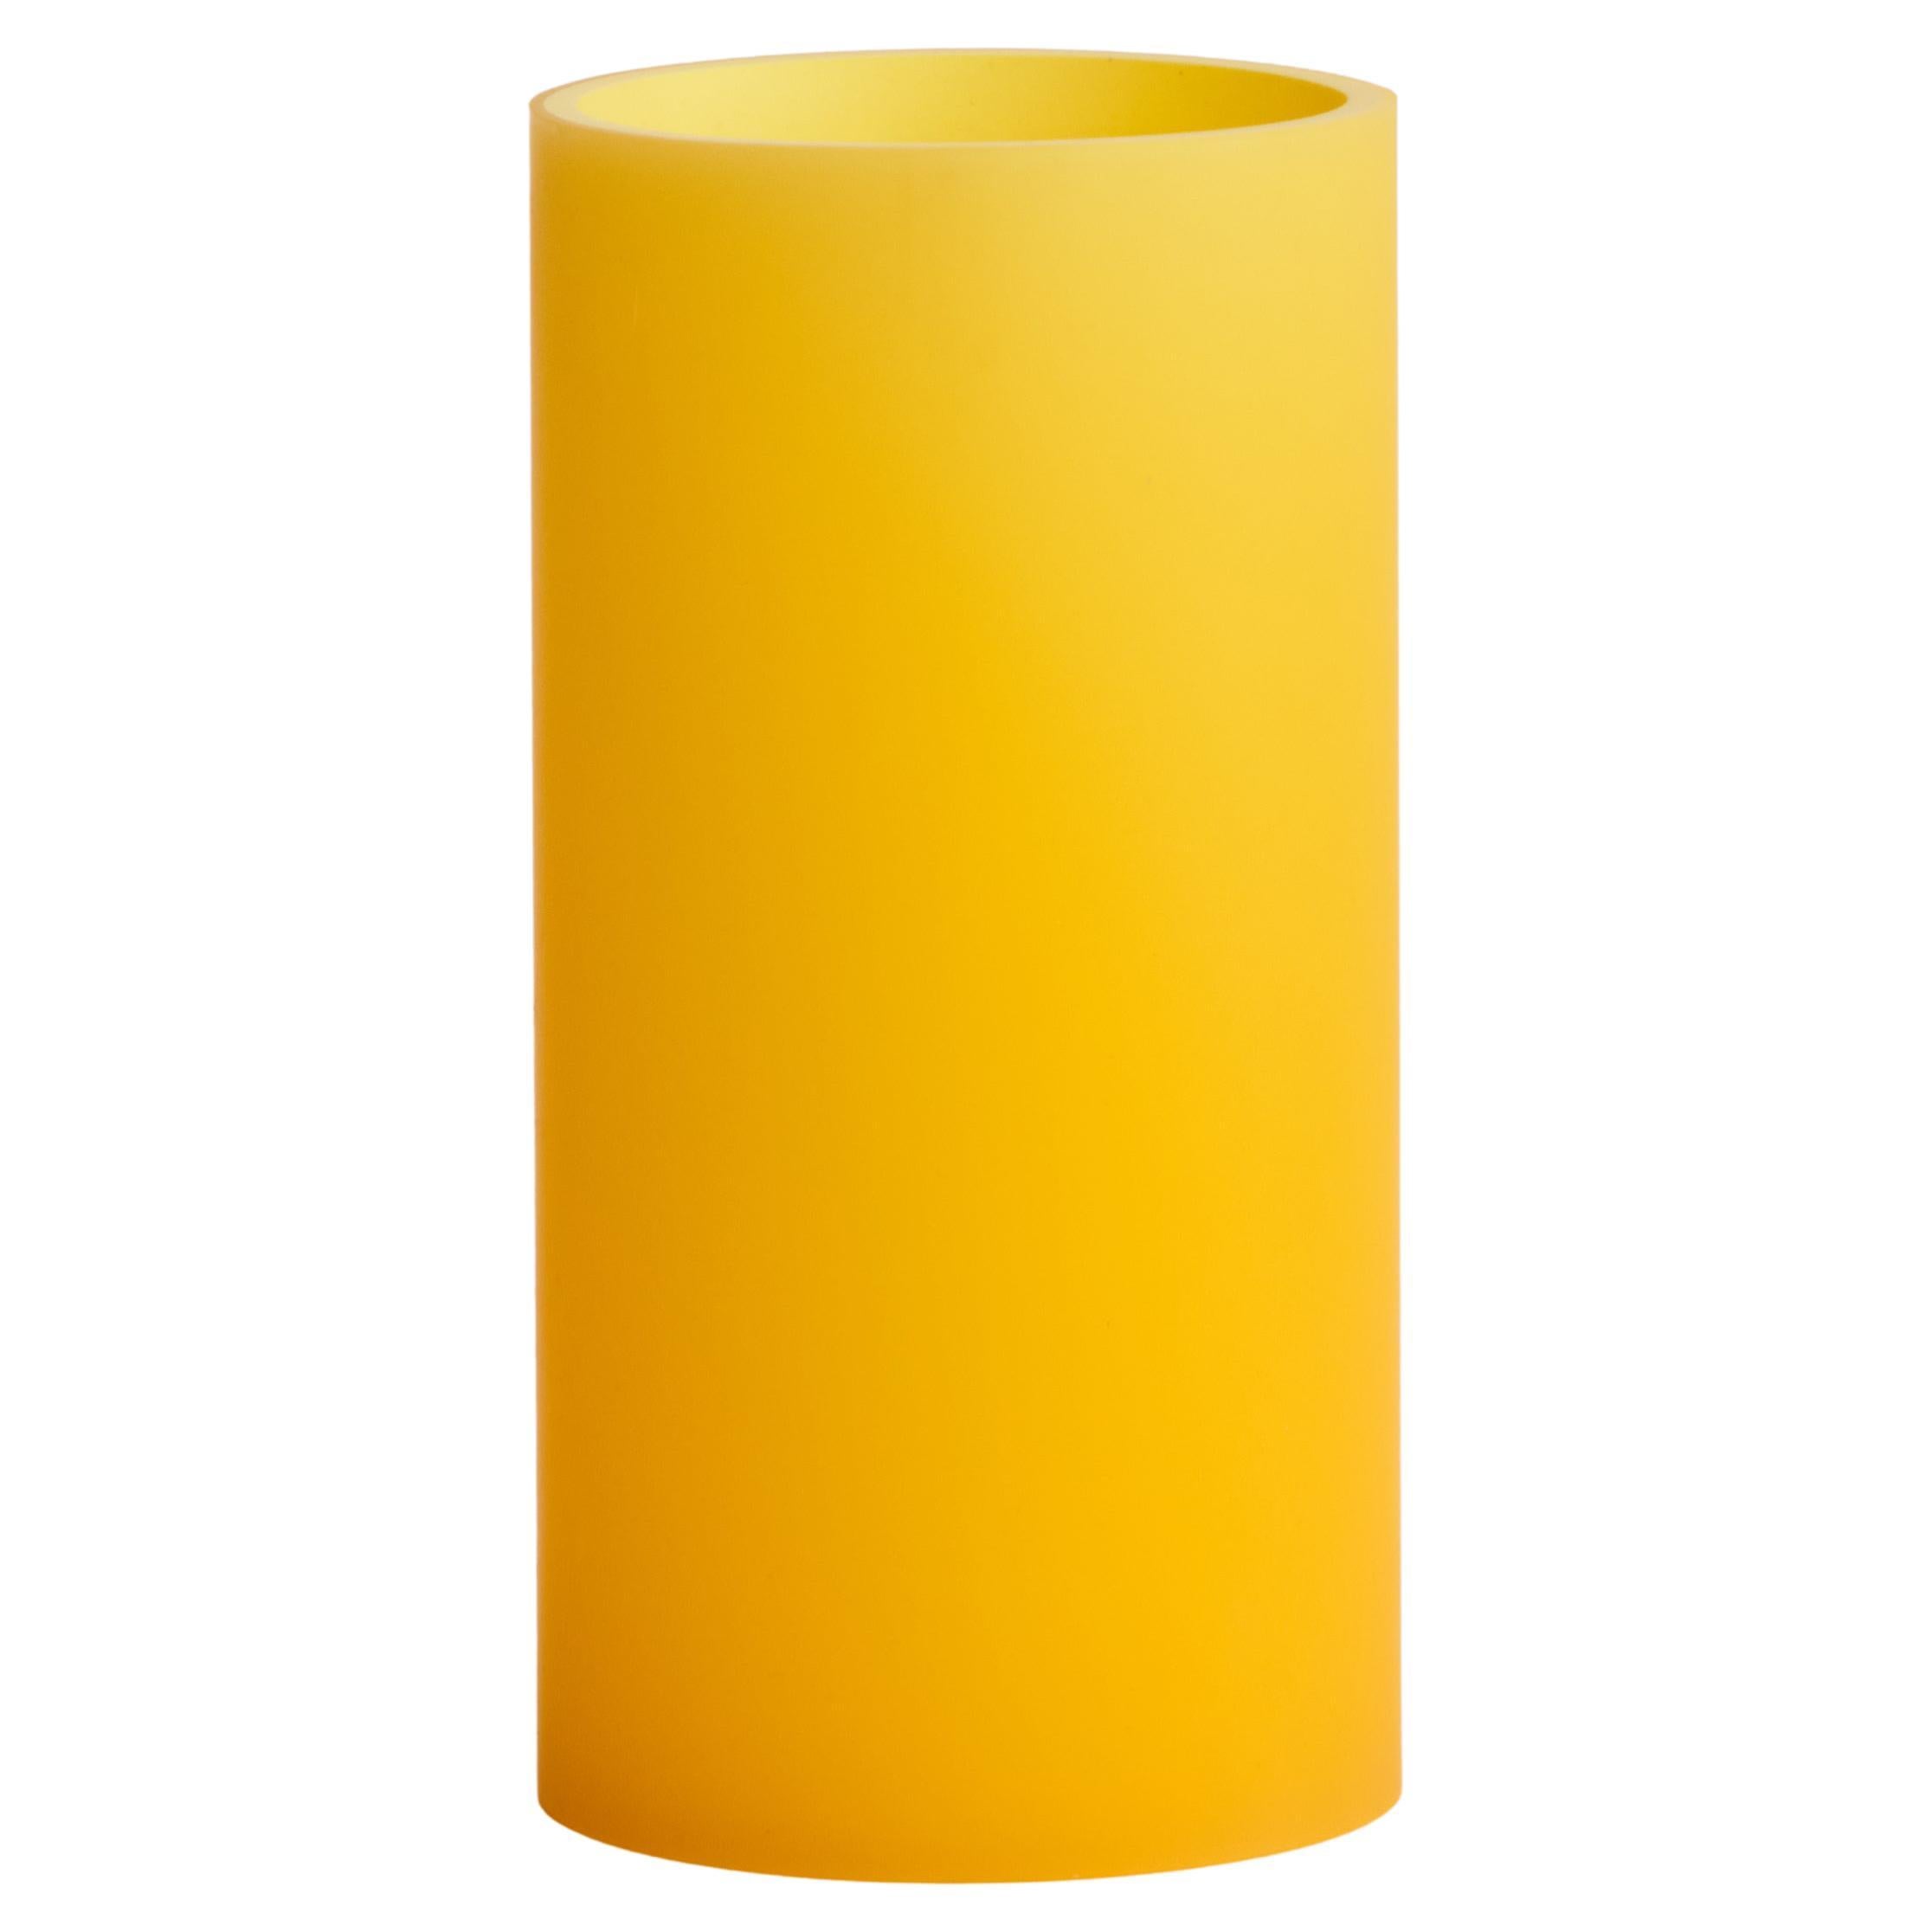 Meld Zylinder Vase/Deko aus Kunstharz in Gelb von Facture, REP von Tuleste Factory